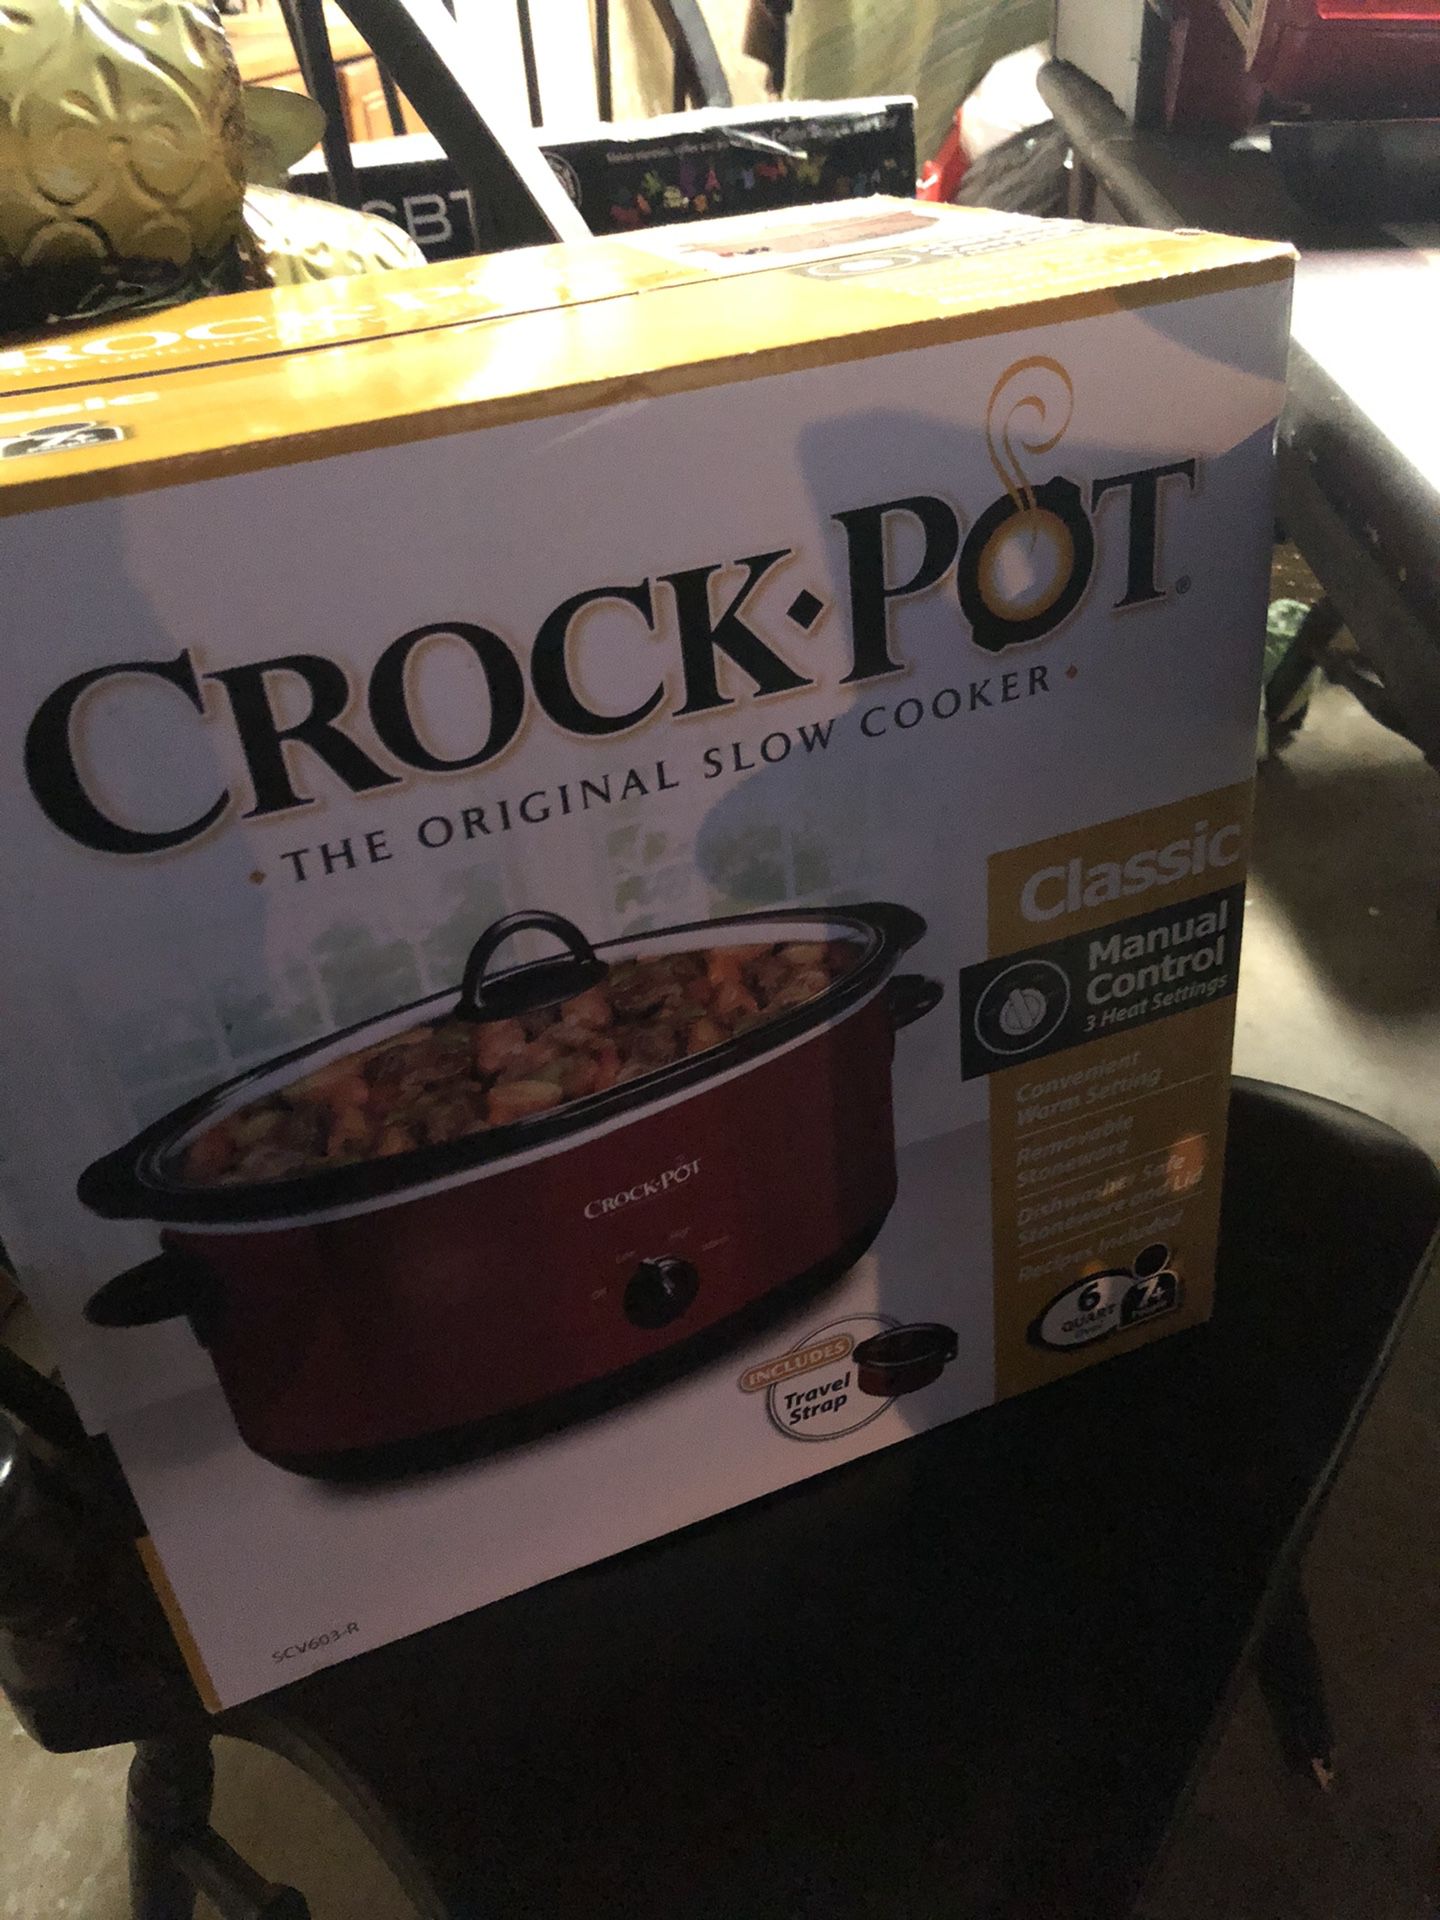 Crock pot 6 quart new